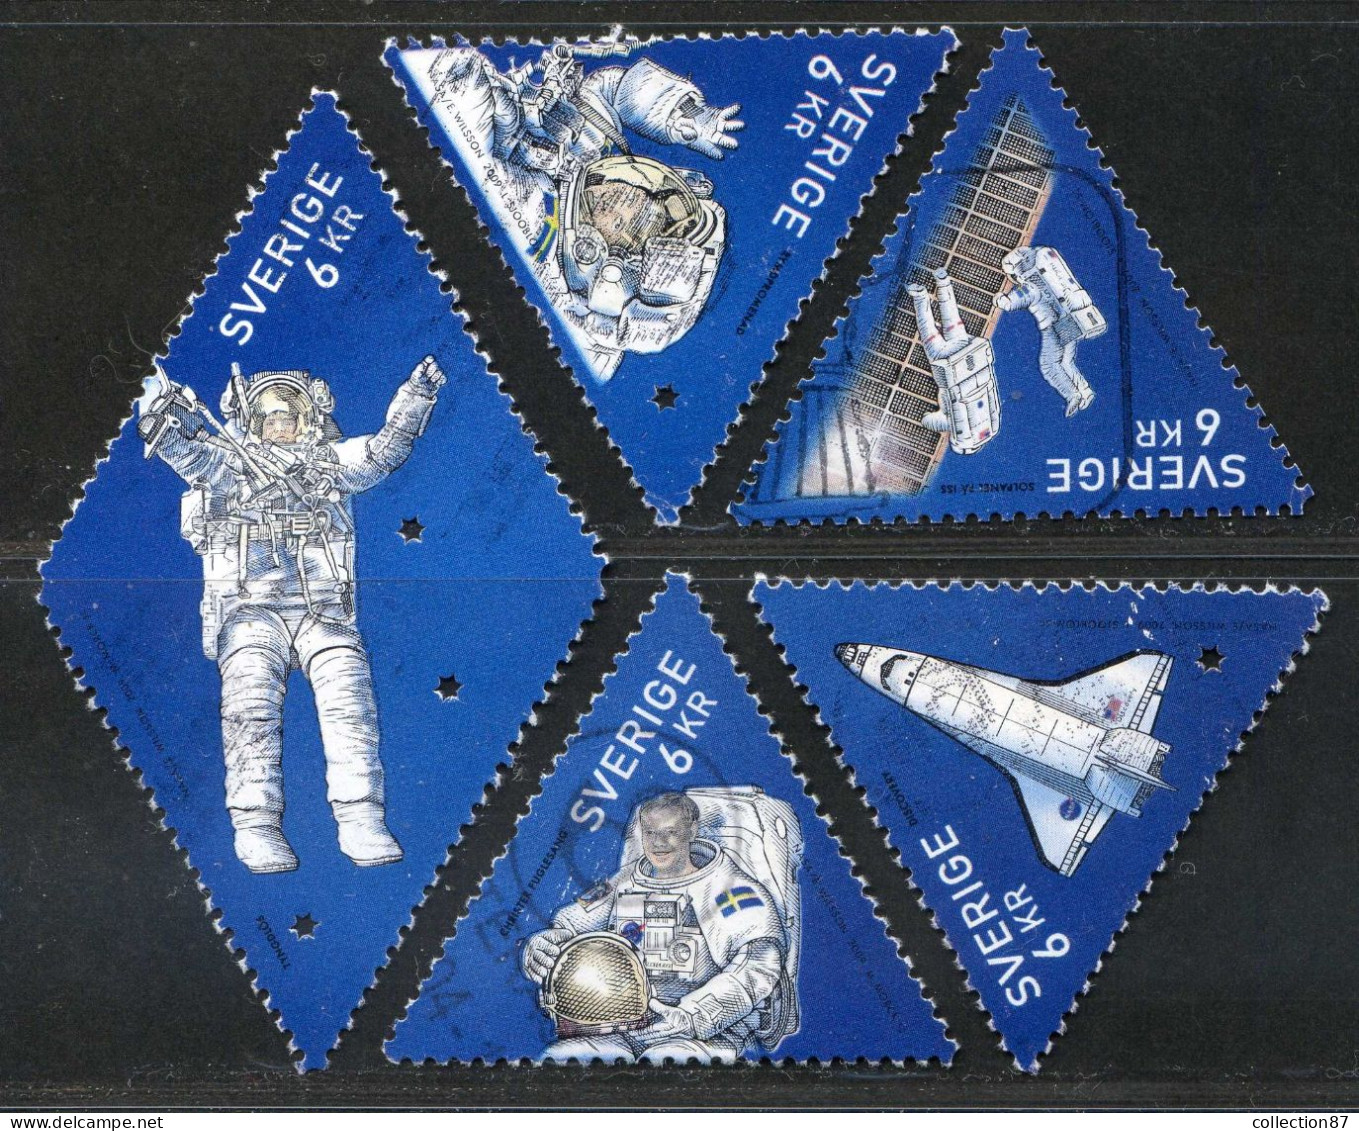 Réf 77 < SUEDE < Yvert N° 2696 à 2700 Ø < Année 2009 Used SWEDEN < Espace Christer Fuglesang Premier Astronaute Suédois - Oblitérés